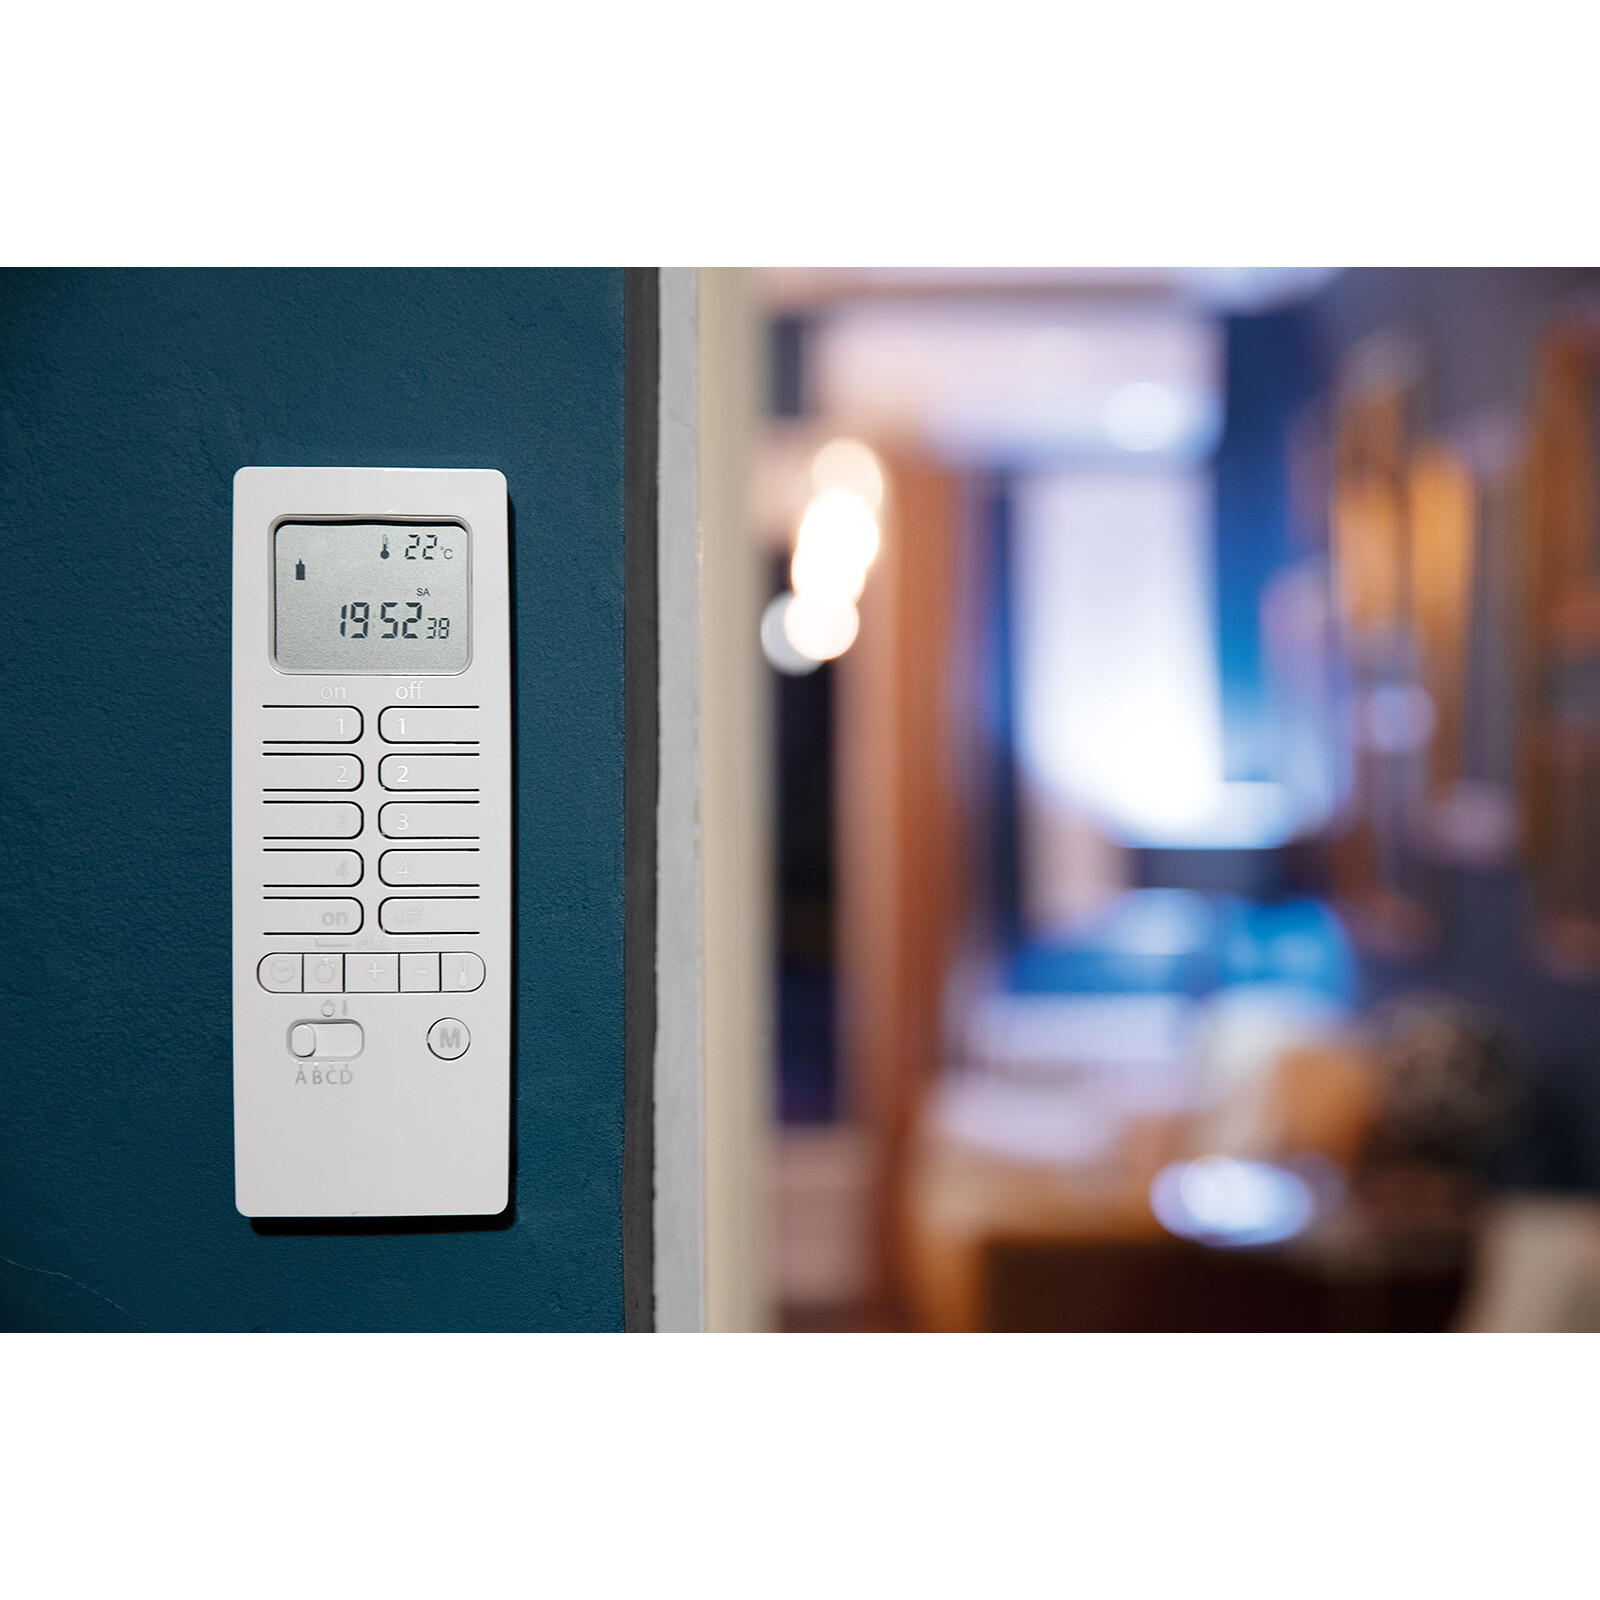 Module de chauffage (Thermostat) Wifi pour radiateur électrique ON/OFF -  CALI-ON 